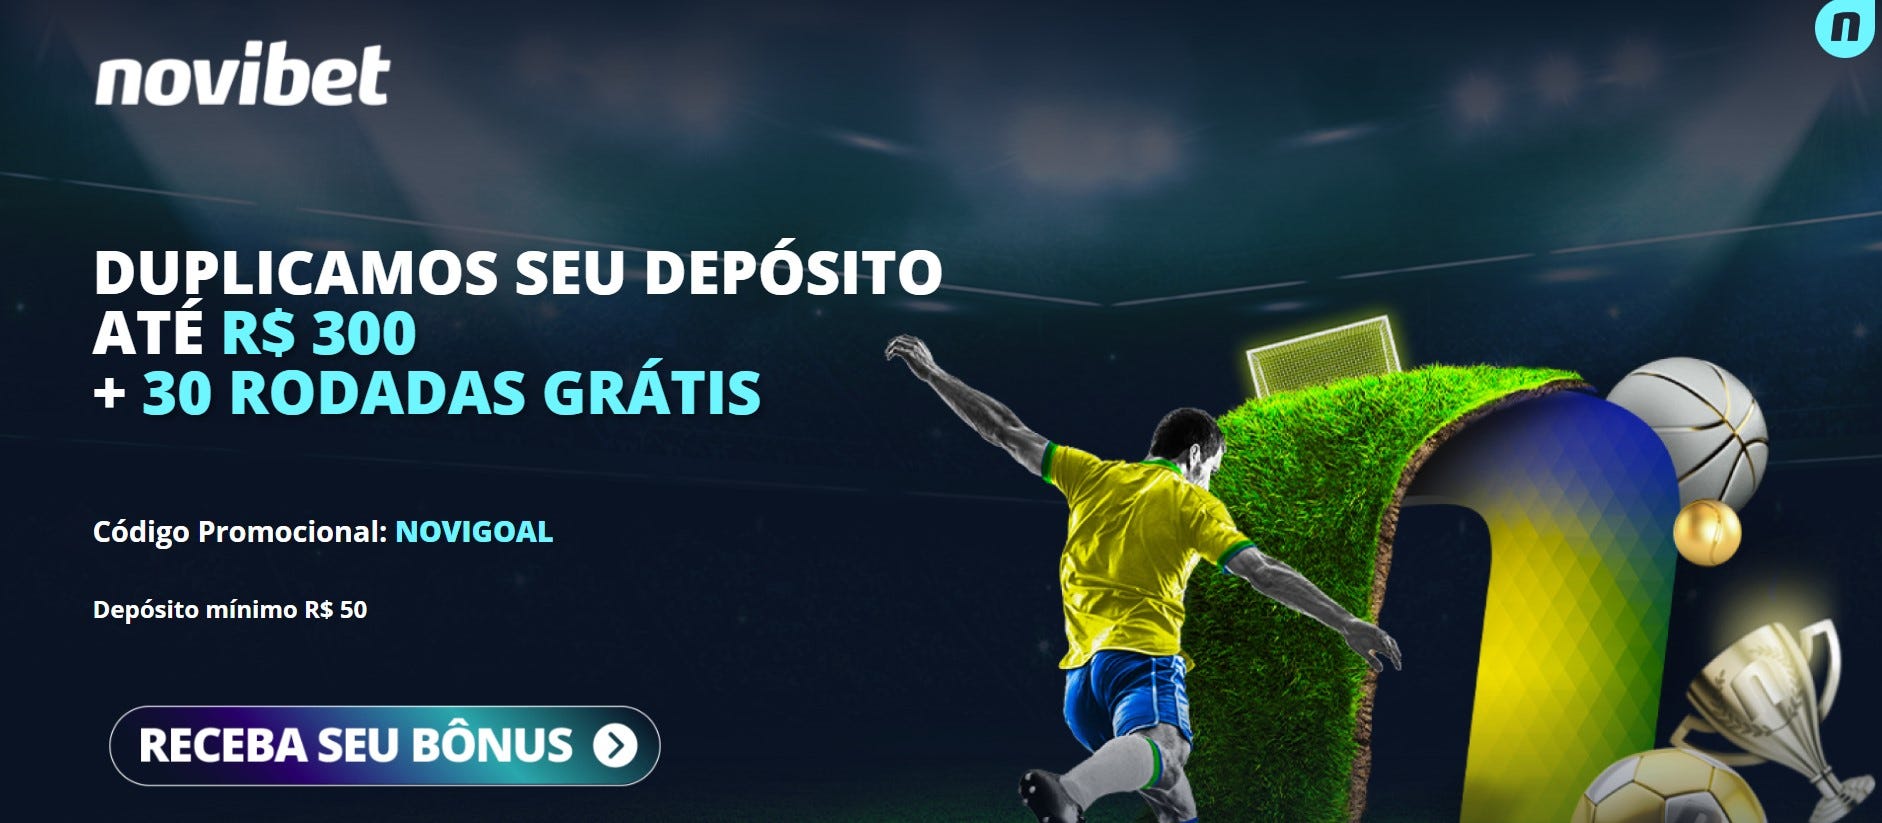 Novibet fecha patrocínio da Cota de Gols do Campeonato Paulista de